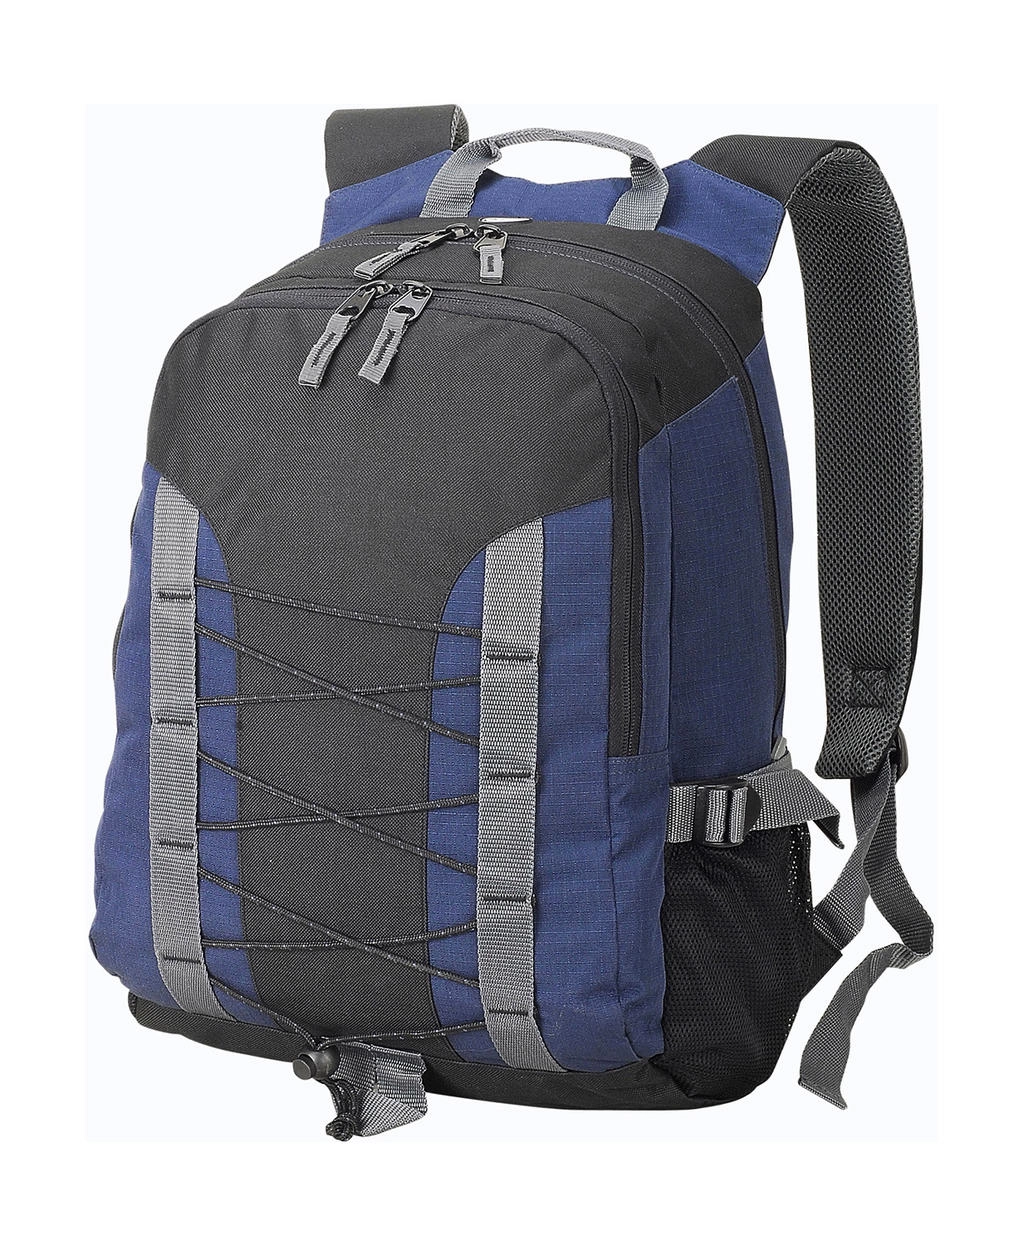 Miami Backpack zum Besticken und Bedrucken in der Farbe Navy/Black/Dark Grey mit Ihren Logo, Schriftzug oder Motiv.